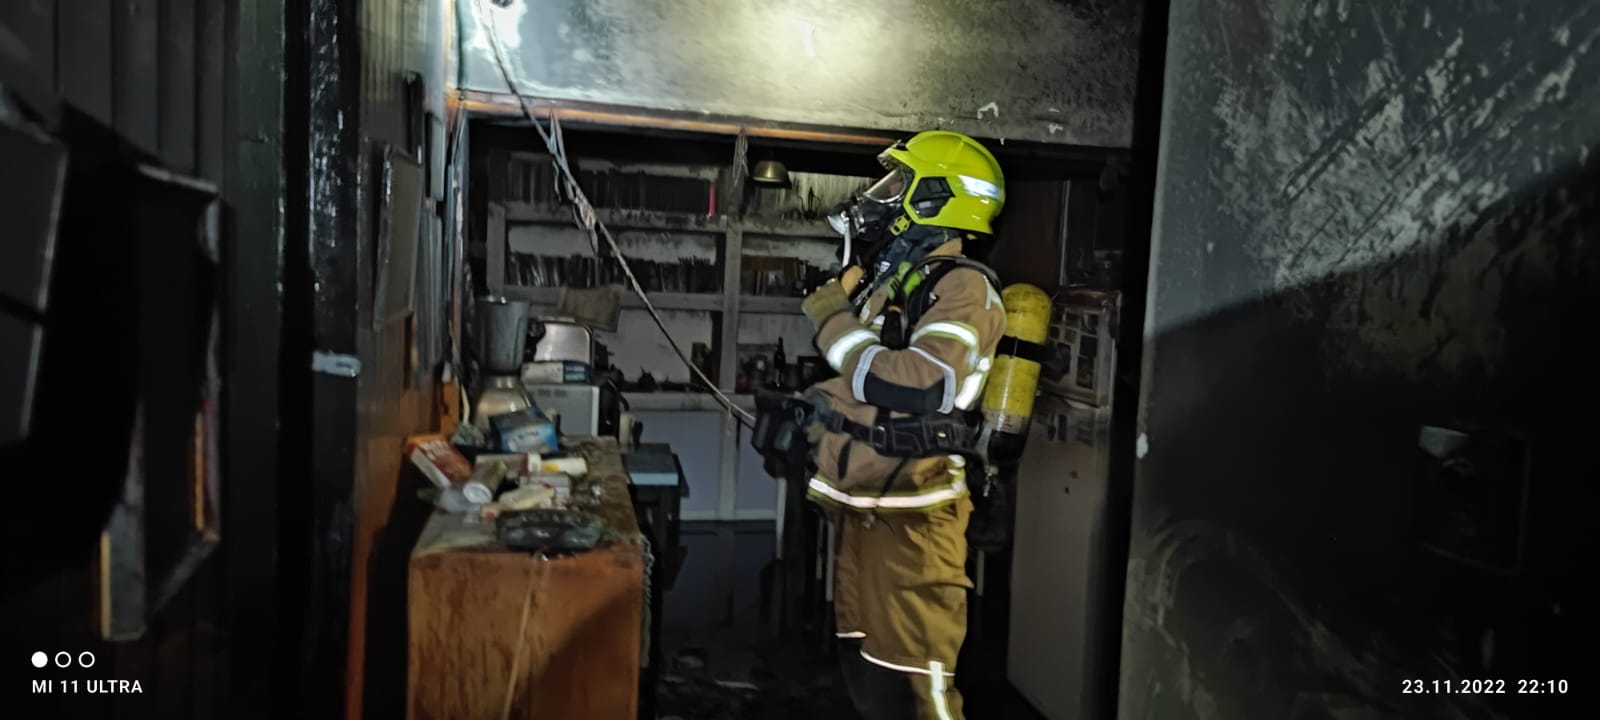 שריפת בית הלילה בקיבוץ עמיעד: לוחמי האש השתלטו על הבעירה